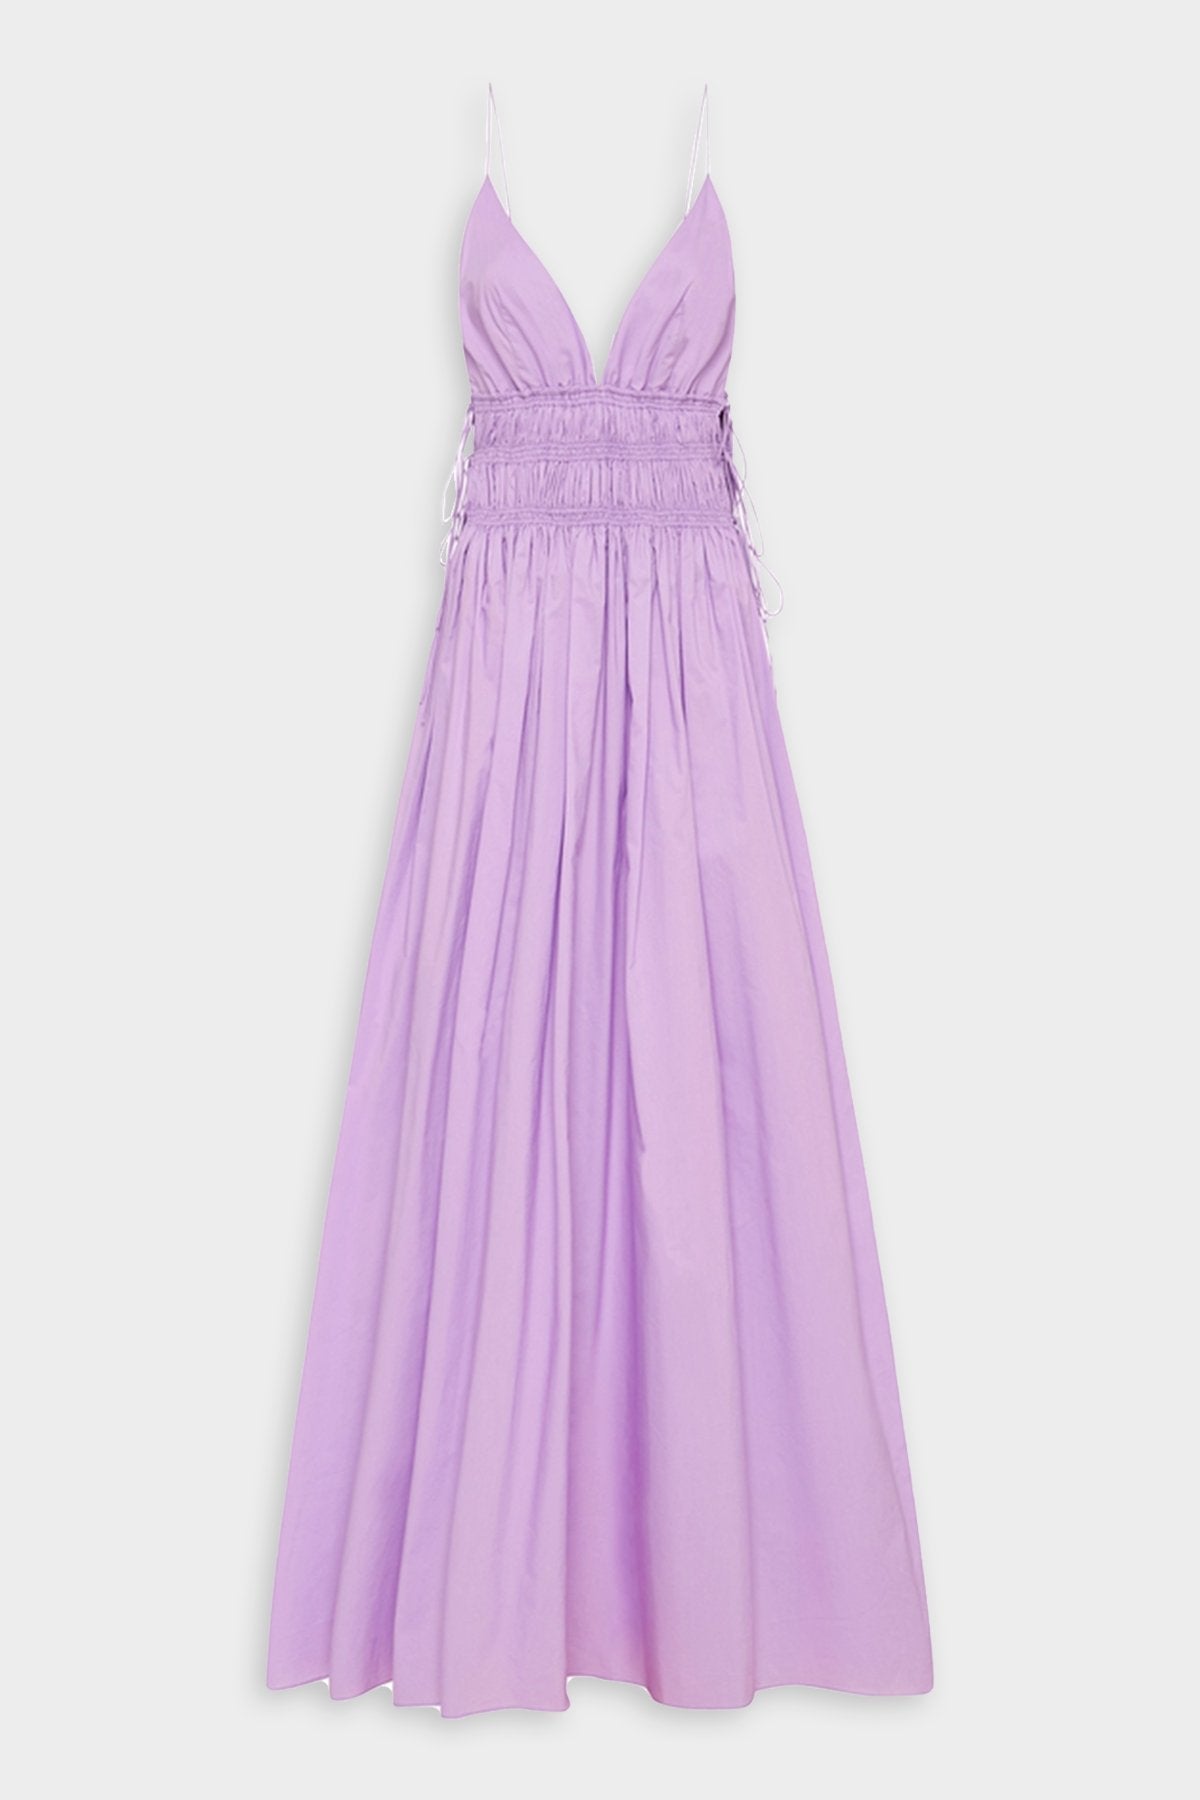 Shirred Triangle Dress in Violet - shop-olivia.com